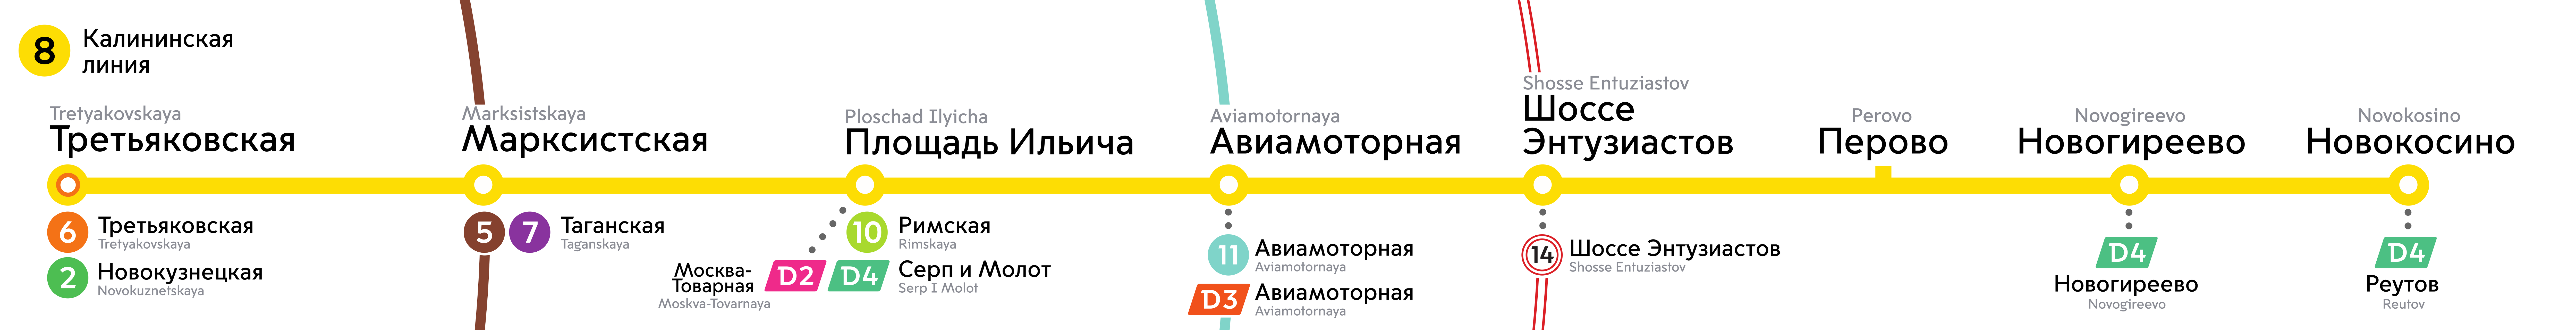 Москва — Метрополитен — Схемы; Москва — Метрополитен — [8] Калининско-Солнцевская линия